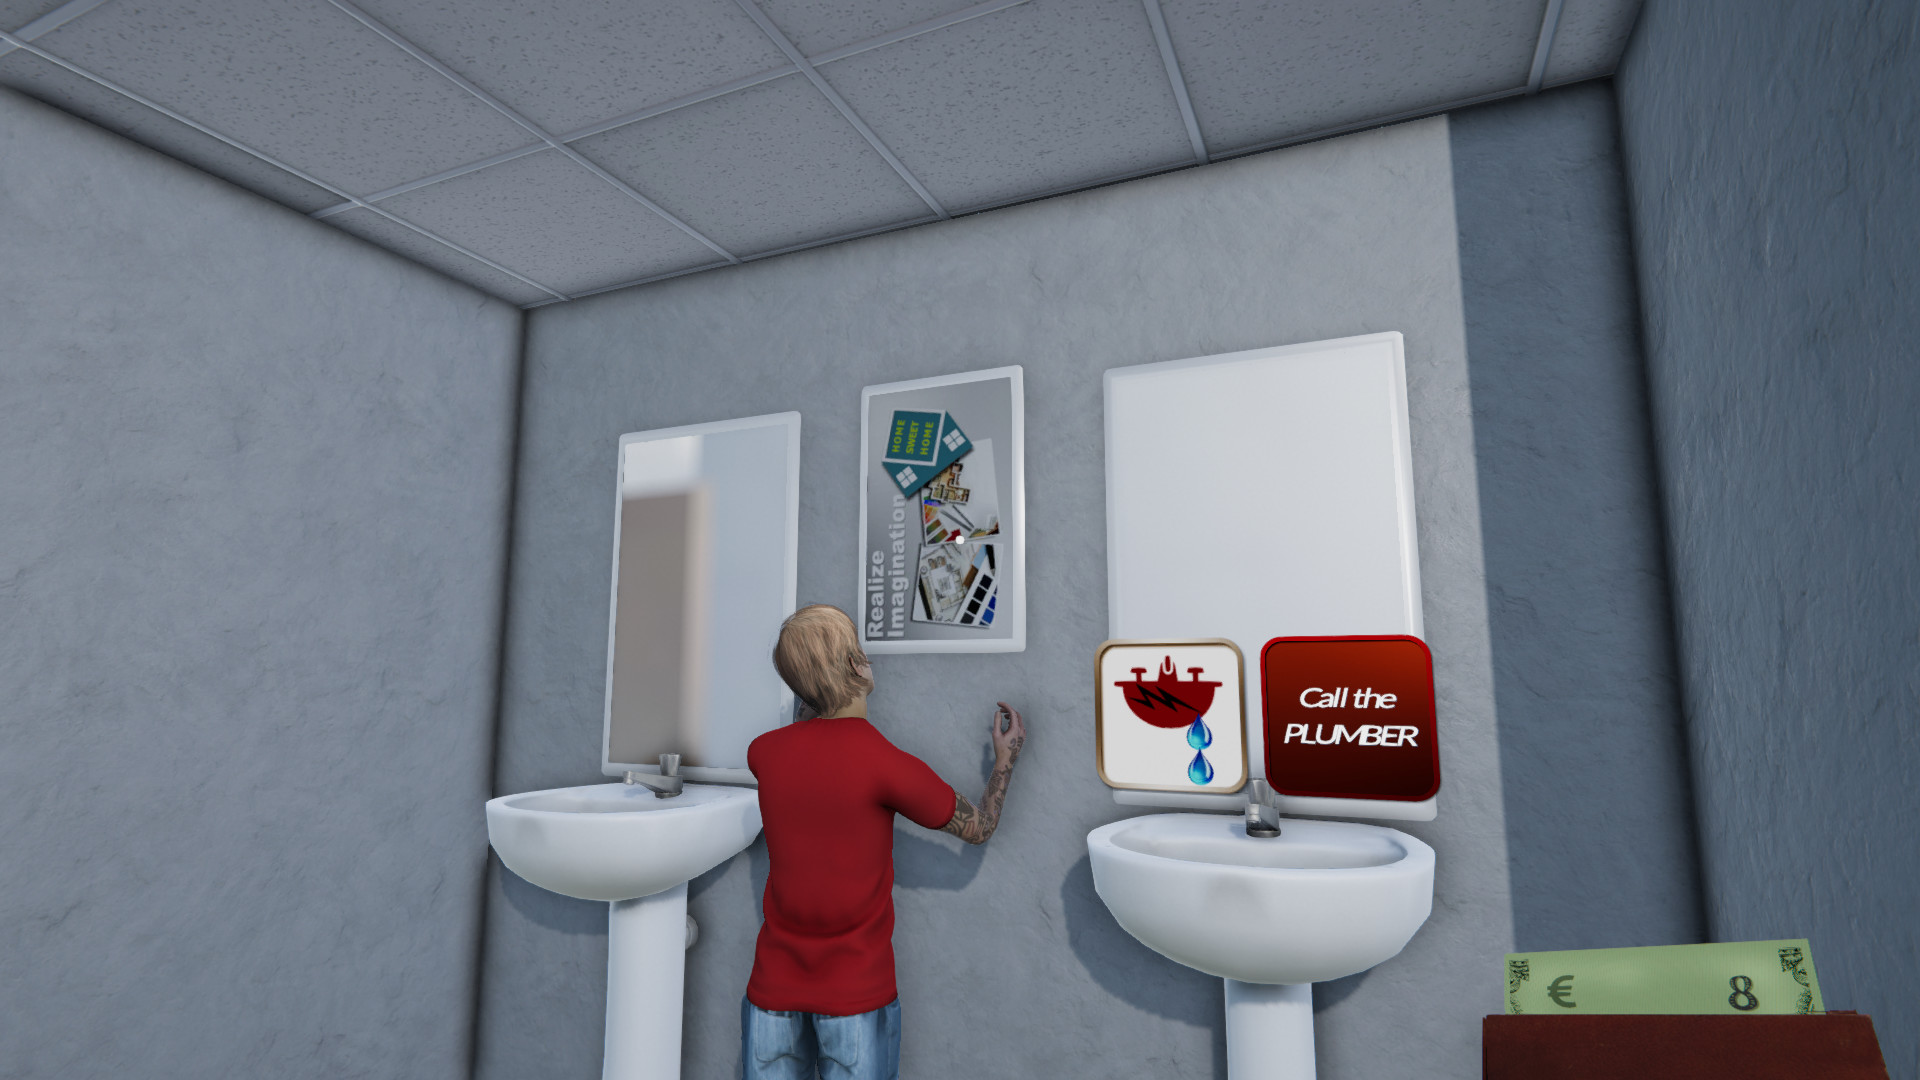 Toilet Management Simulator screenshot